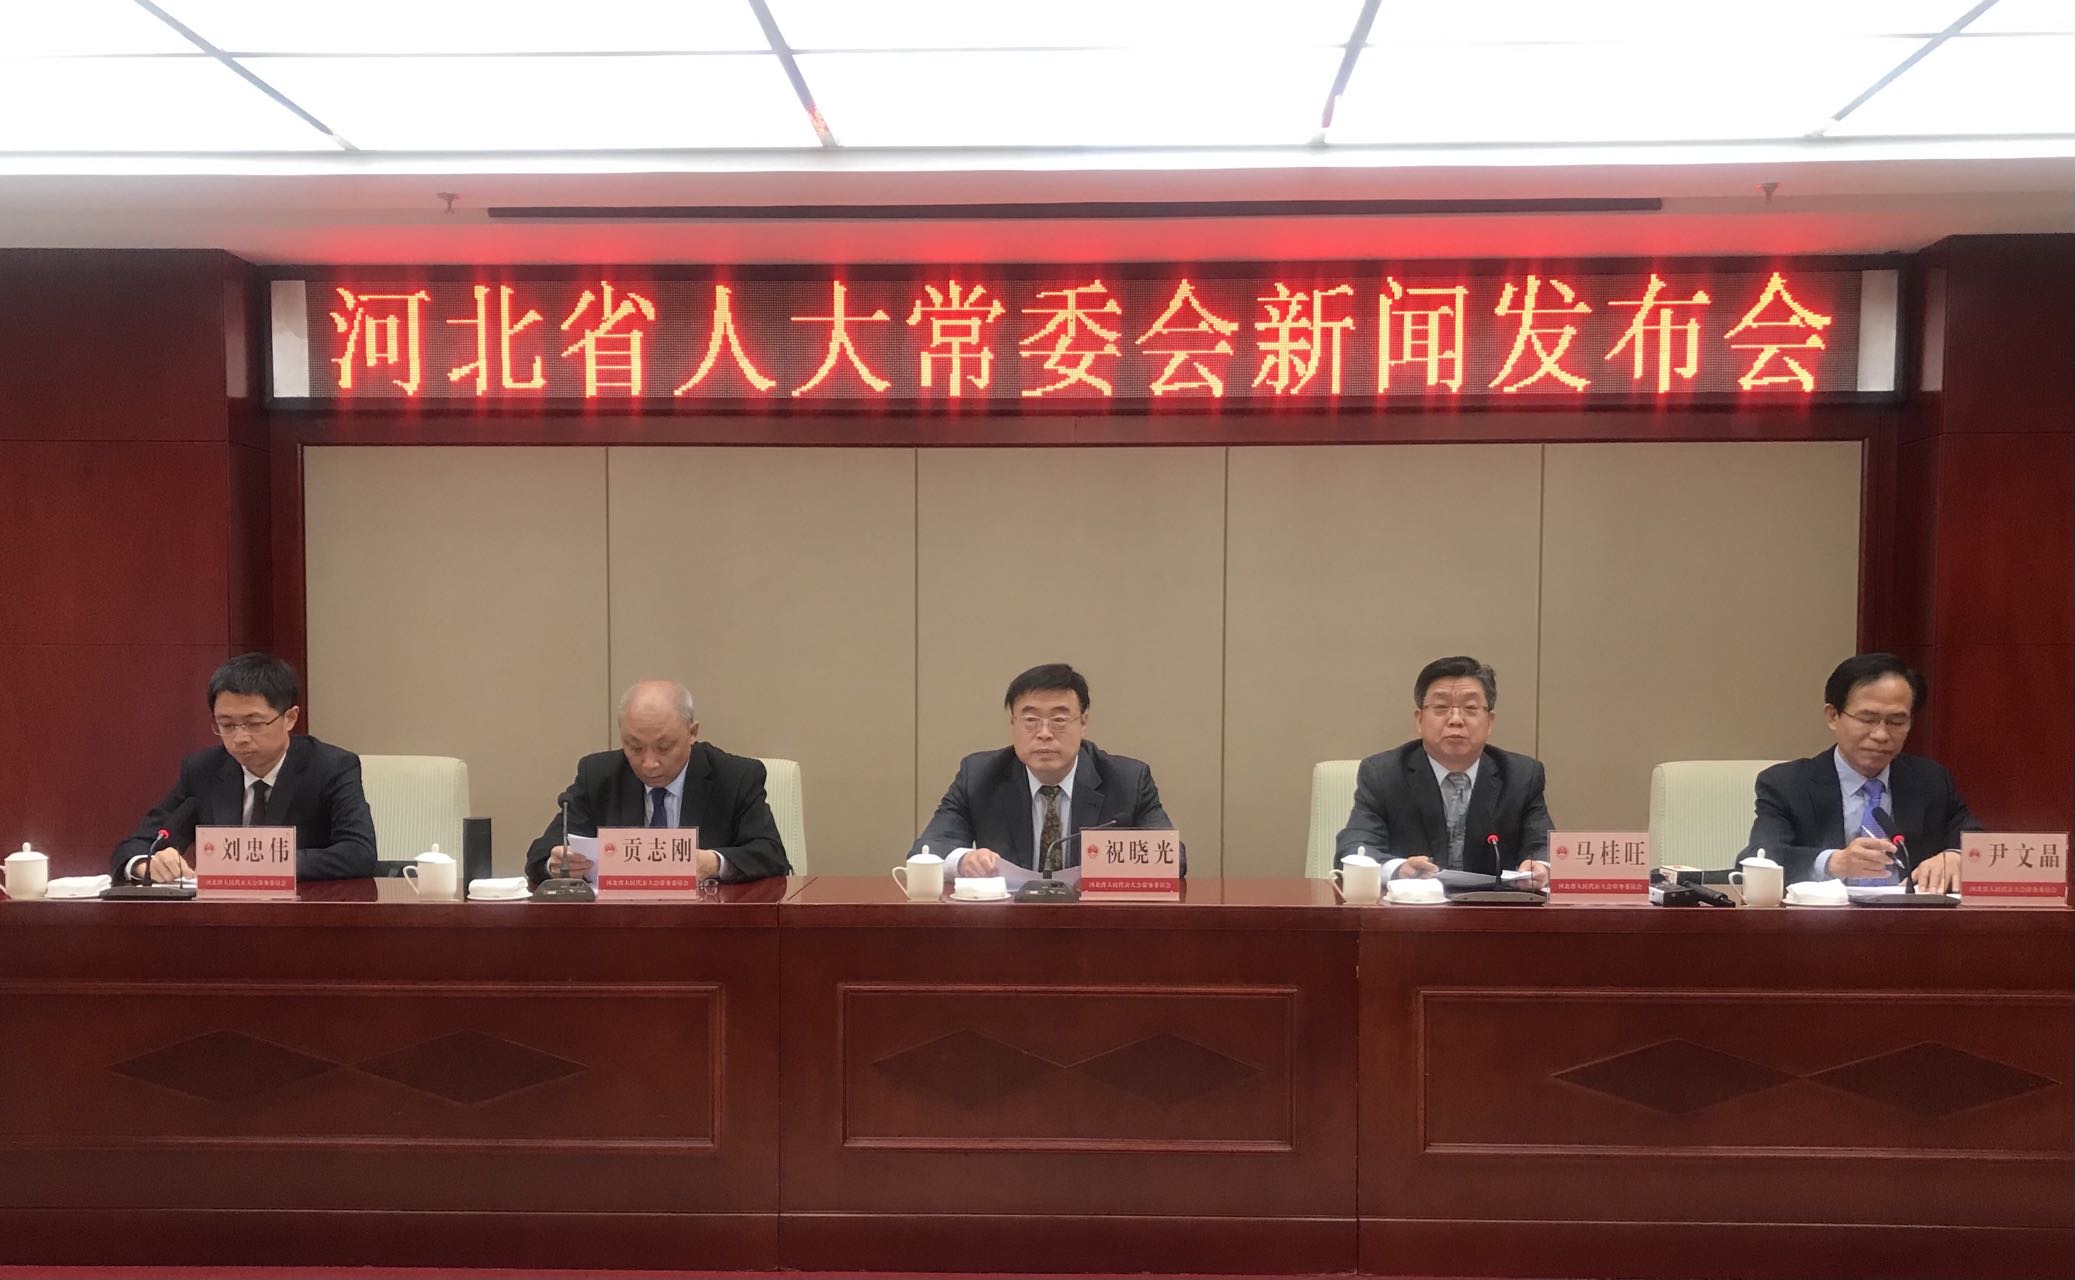 河北省修订土地管理条例 切实保护耕地和农民利益